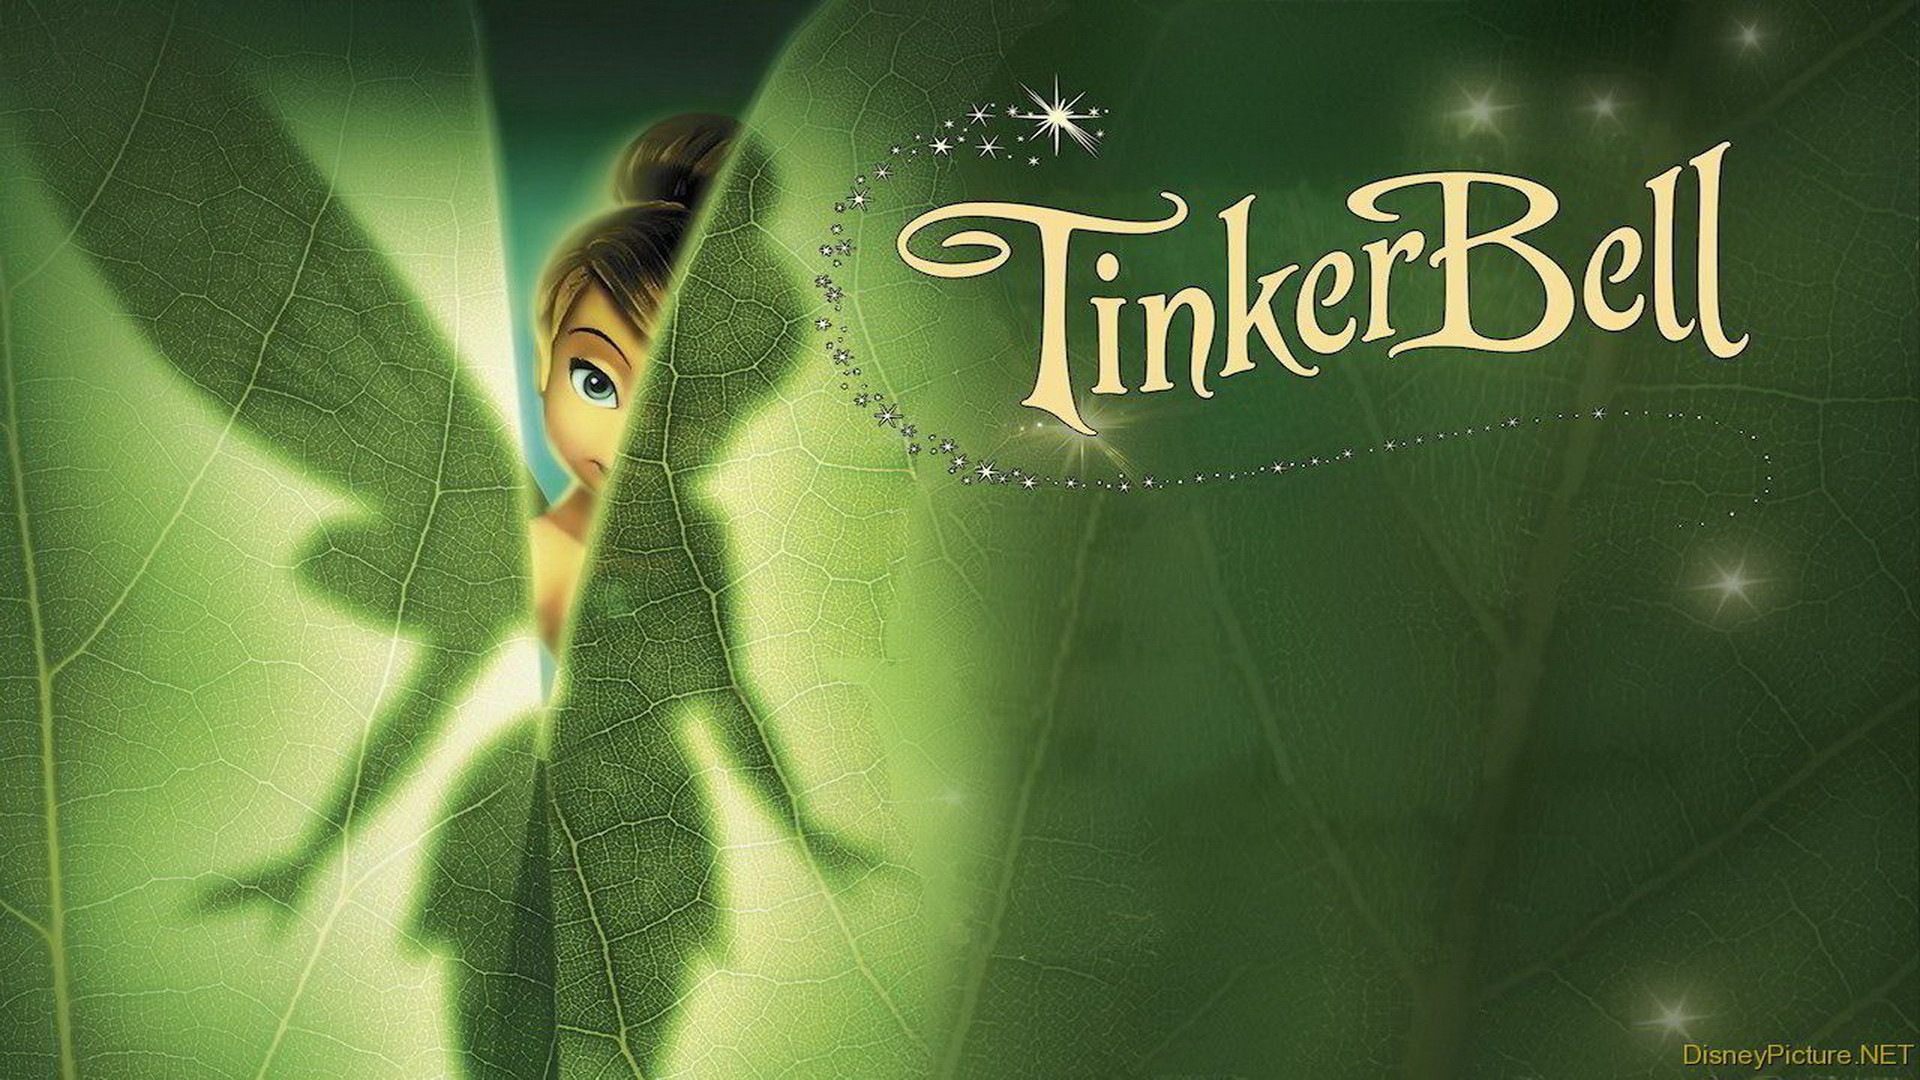 Tinkerbell Wallpaper, Hd 1080p - Tinker Bell - 1920x1080 Wallpaper -  